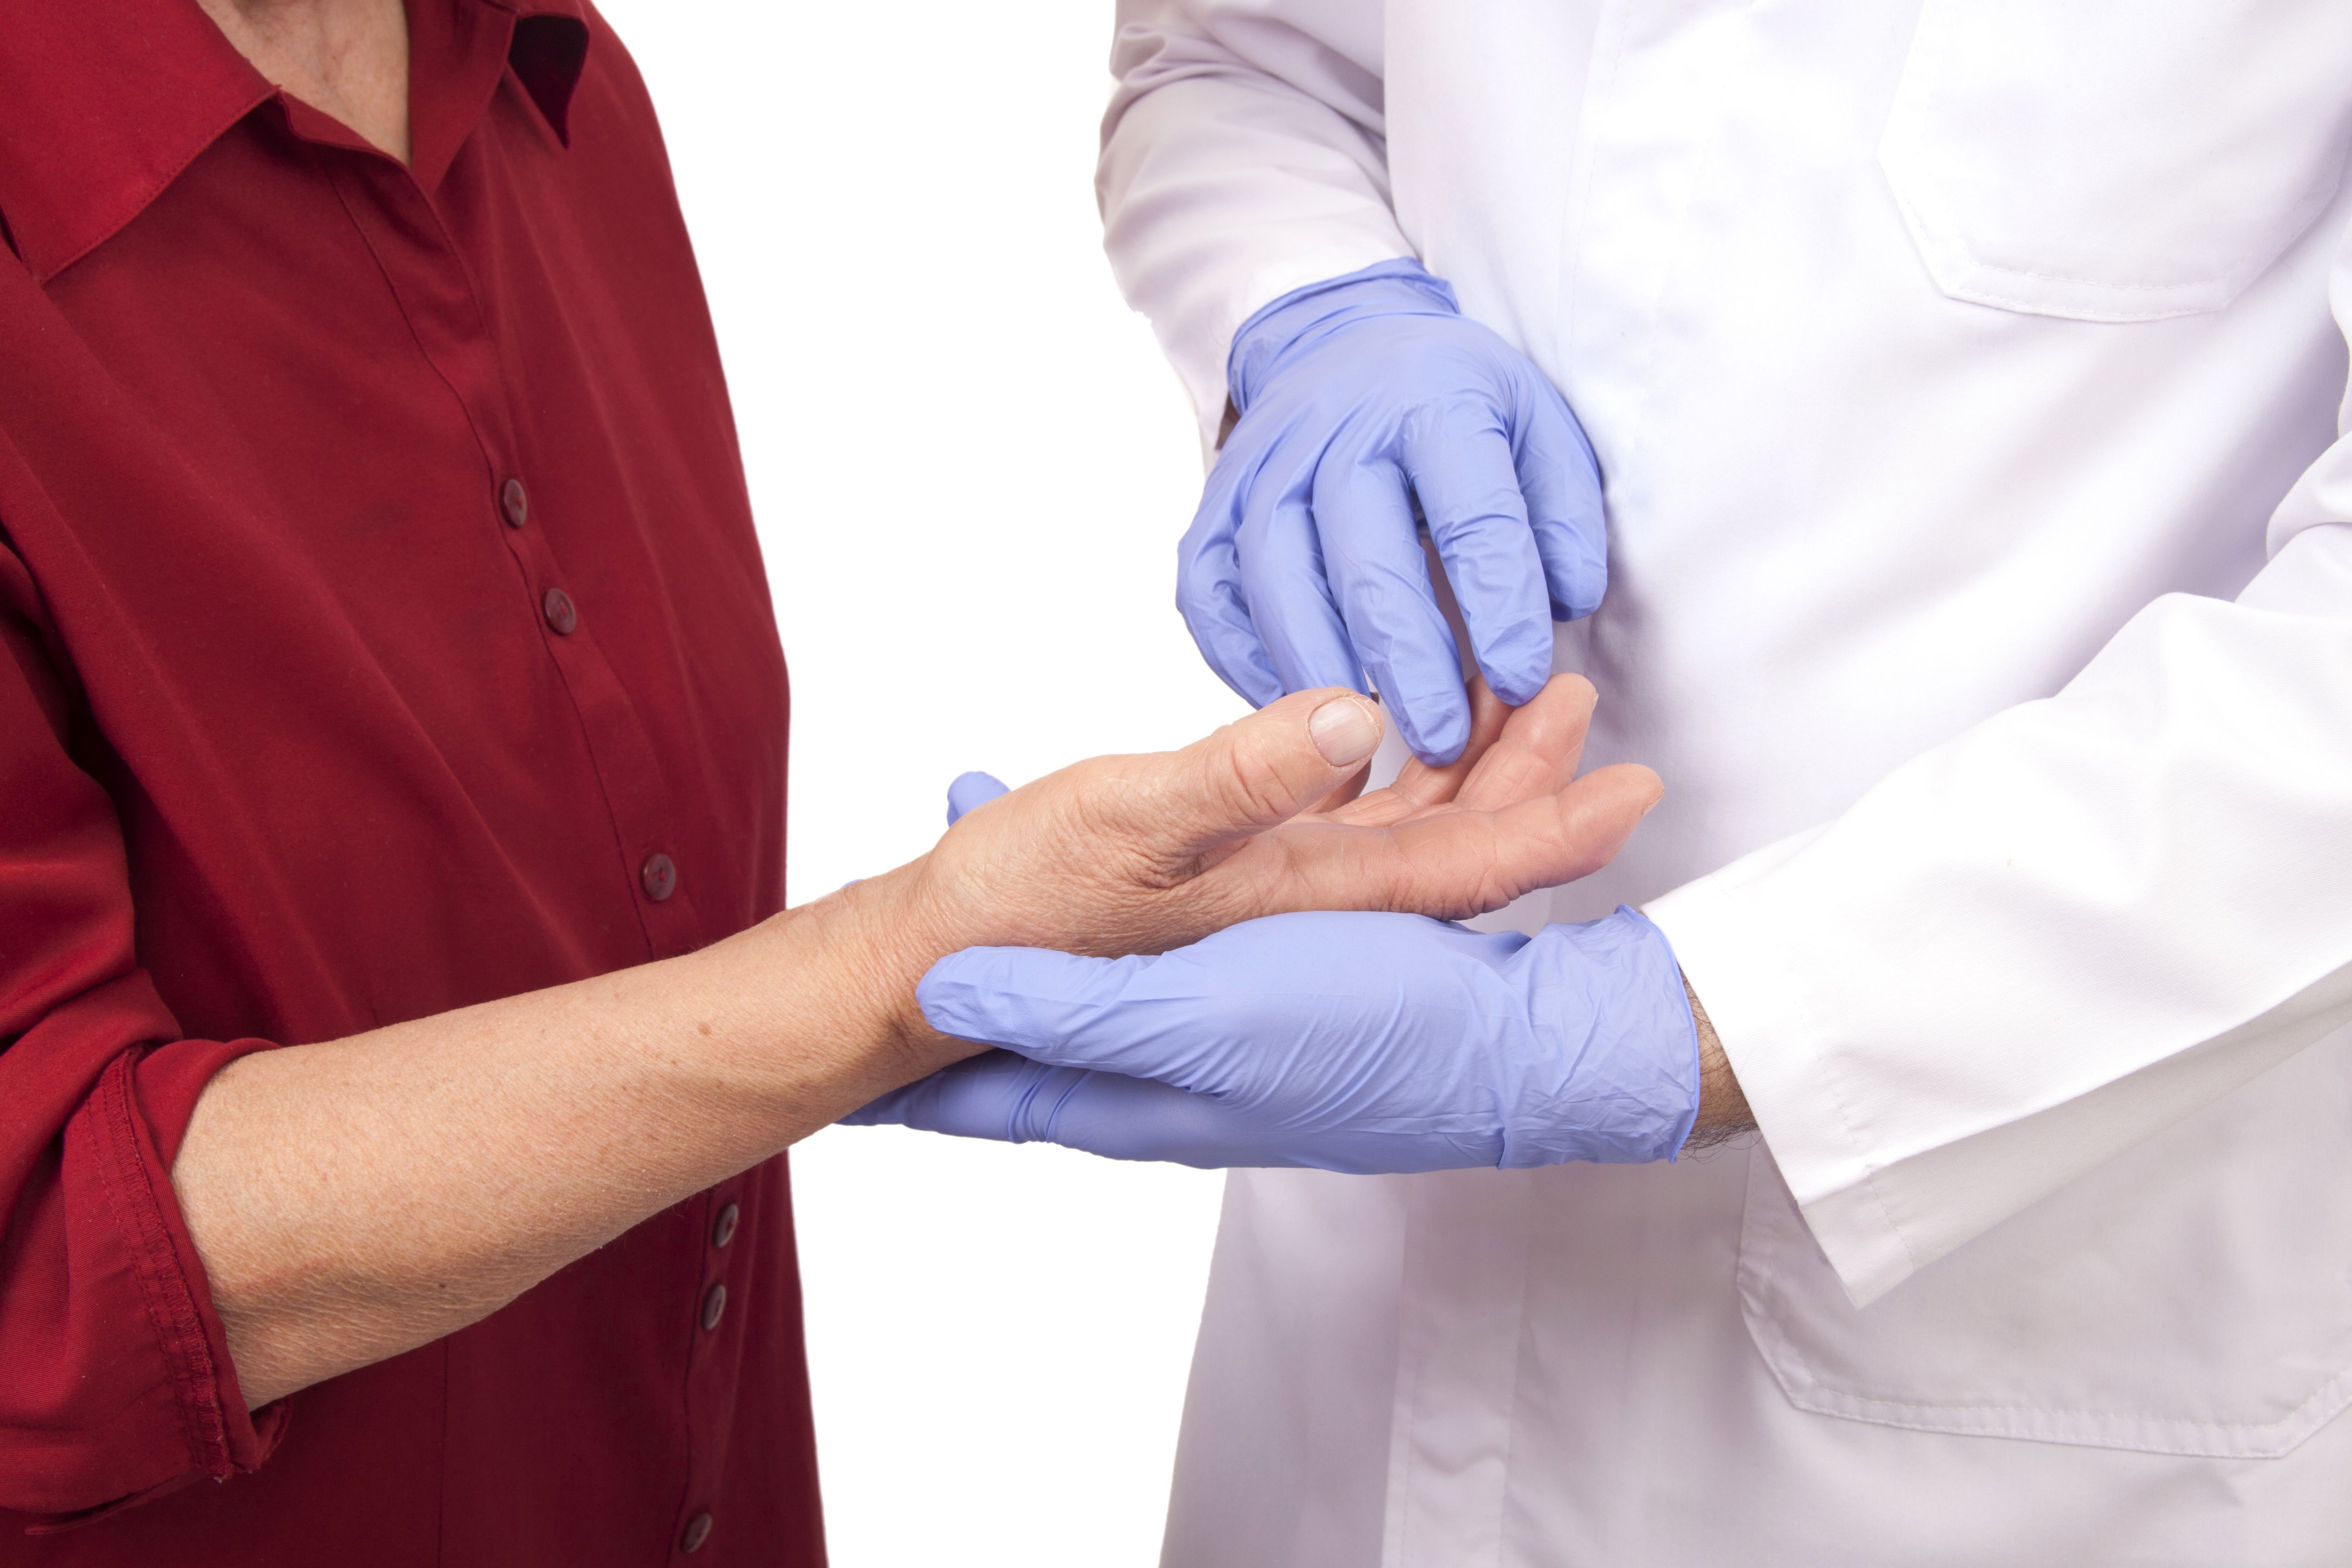 Investigadores destacan la importancia de evaluar los factores de riesgo de osteoporosis en la artritis reumatoide